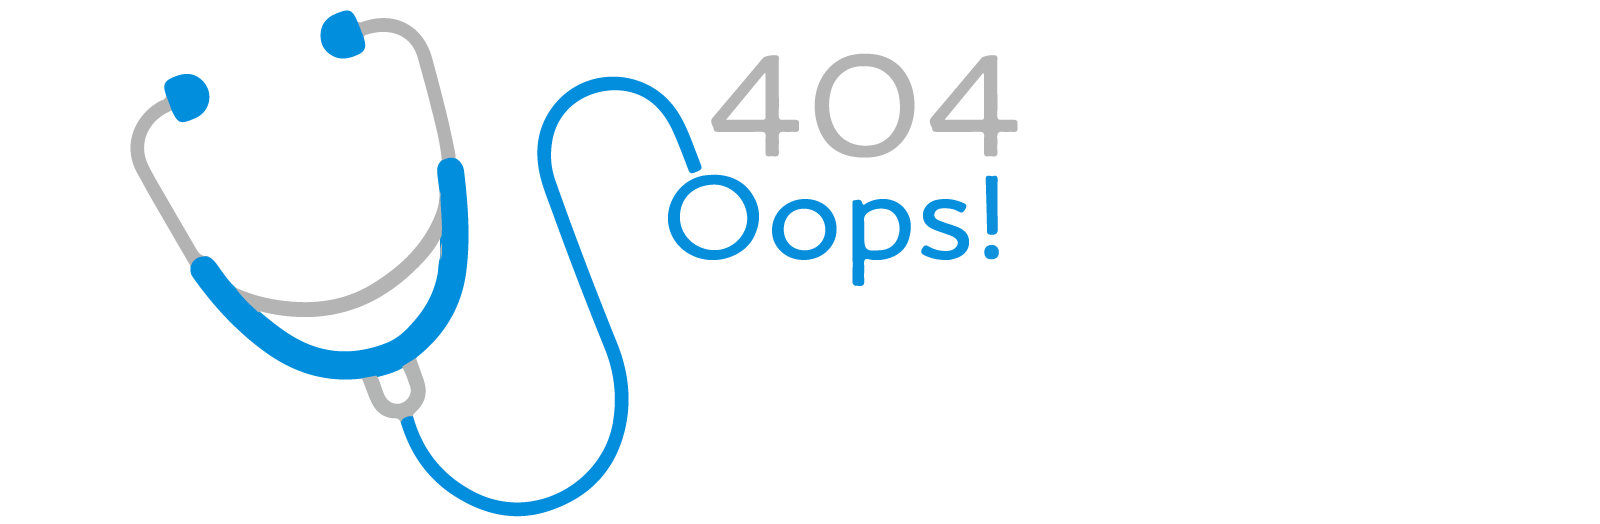 imagen error 404